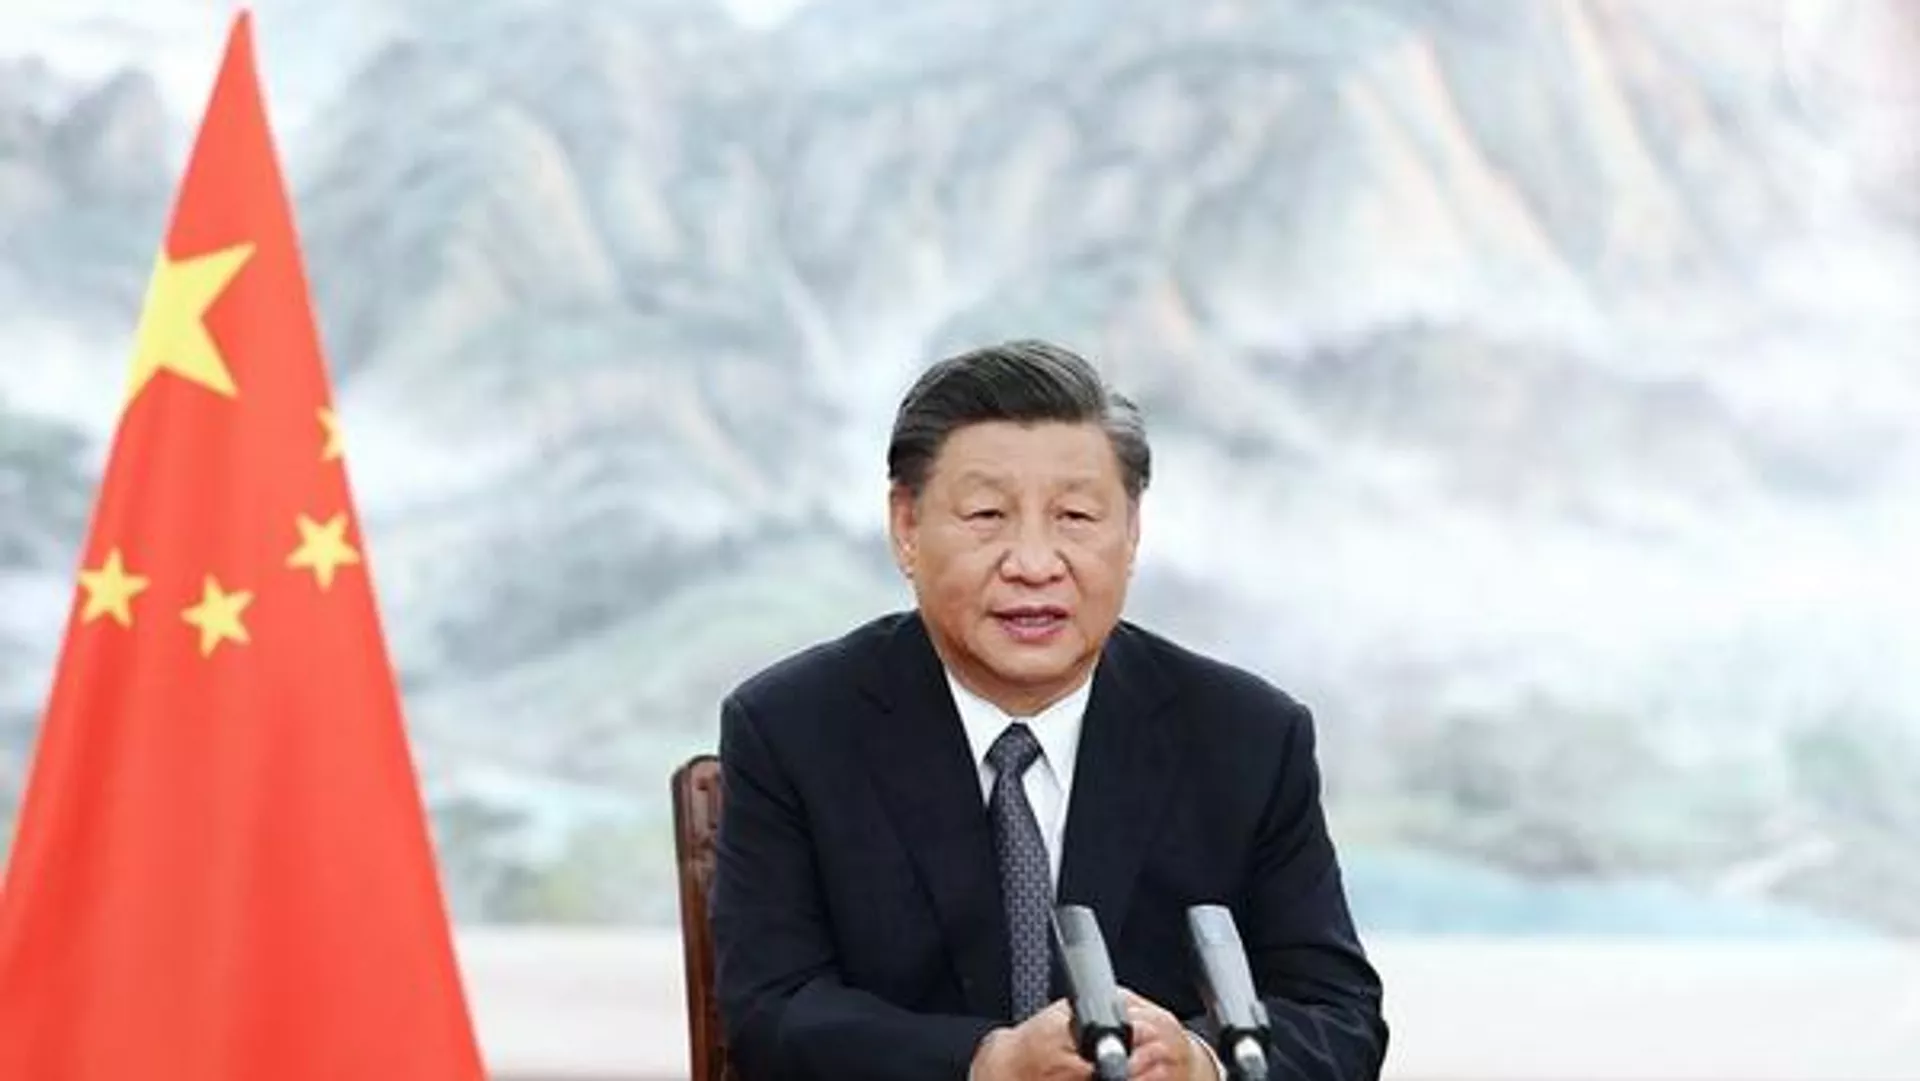 Xi Jinping reelegido como presidente de China por tercera ocasión